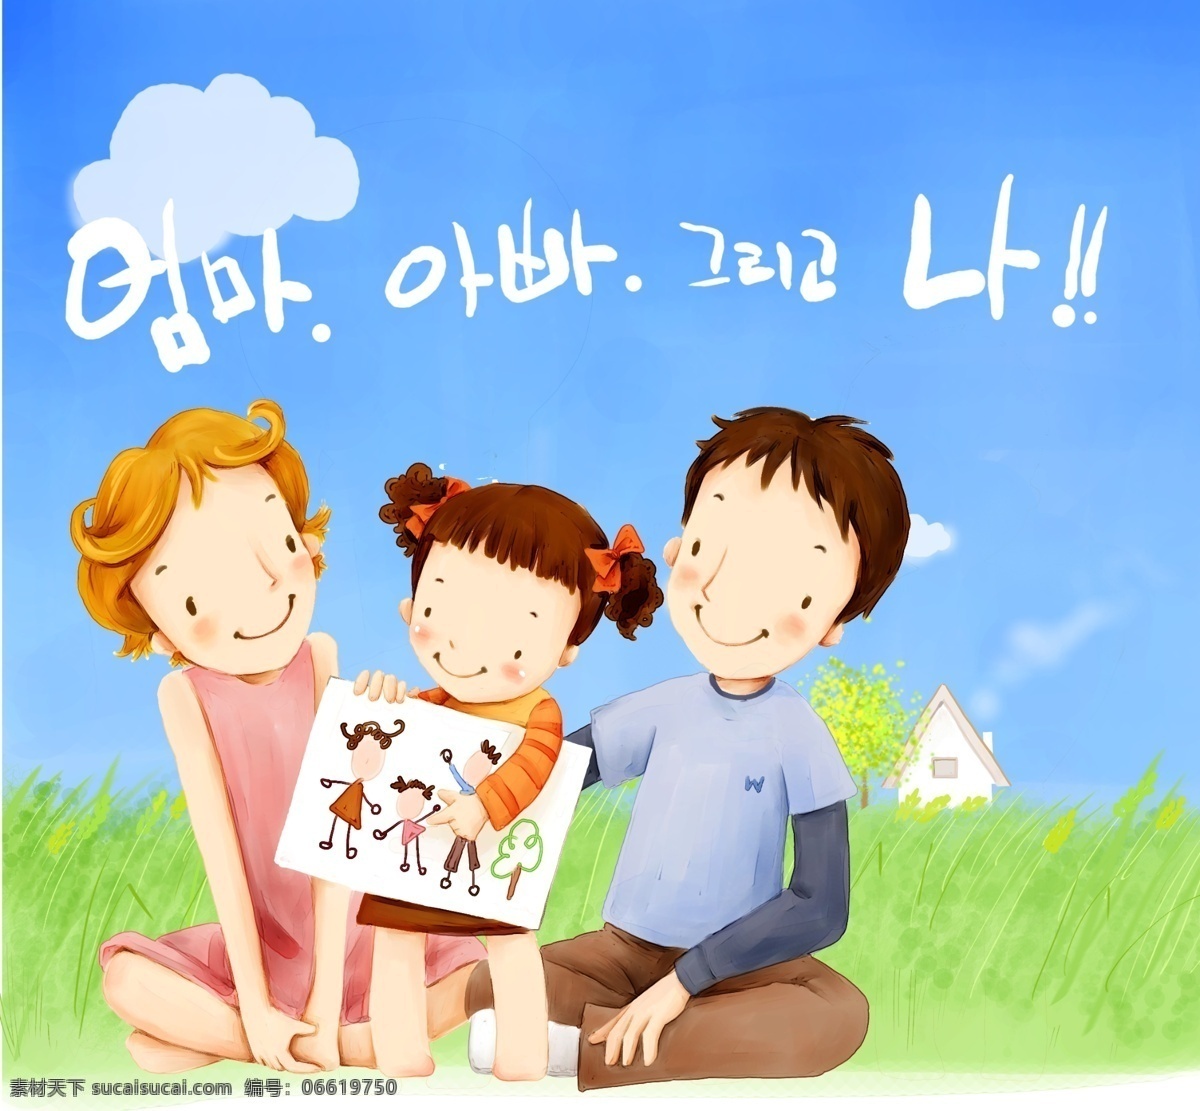 欢乐家庭 卡通漫画 韩式风格 分层 psd0040 设计素材 家庭生活 分层插画 psd源文件 蓝色